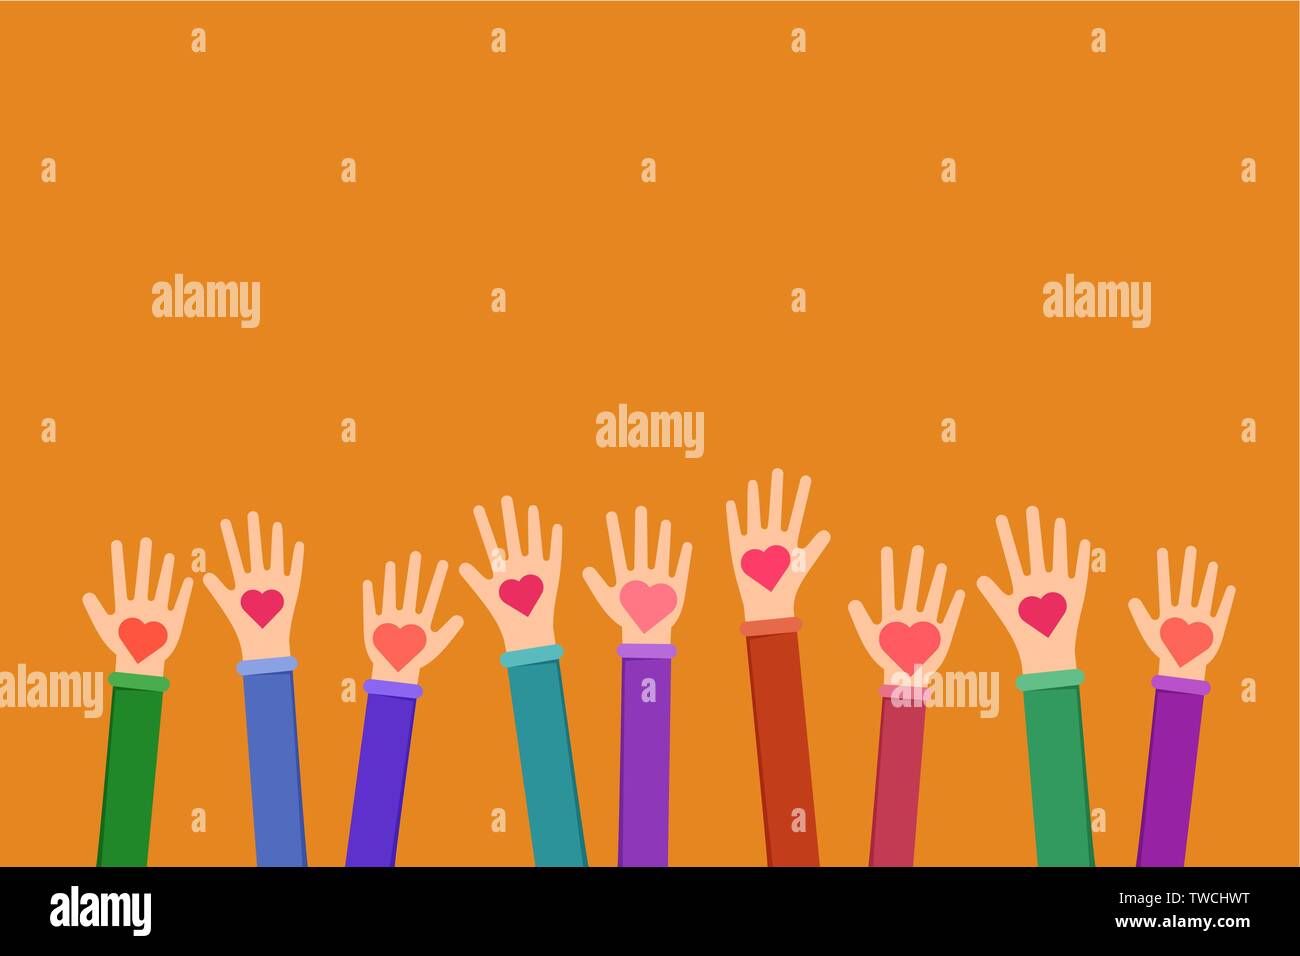 Die karitative Arbeit symbol Flachbild Abbildung. Cartoon Hände halten Herzen auf orangem Hintergrund. Charity Fund, Ehrenamt, fundraising Organisation vereint die Bemühungen um humanitäre Hilfe Stock Vektor